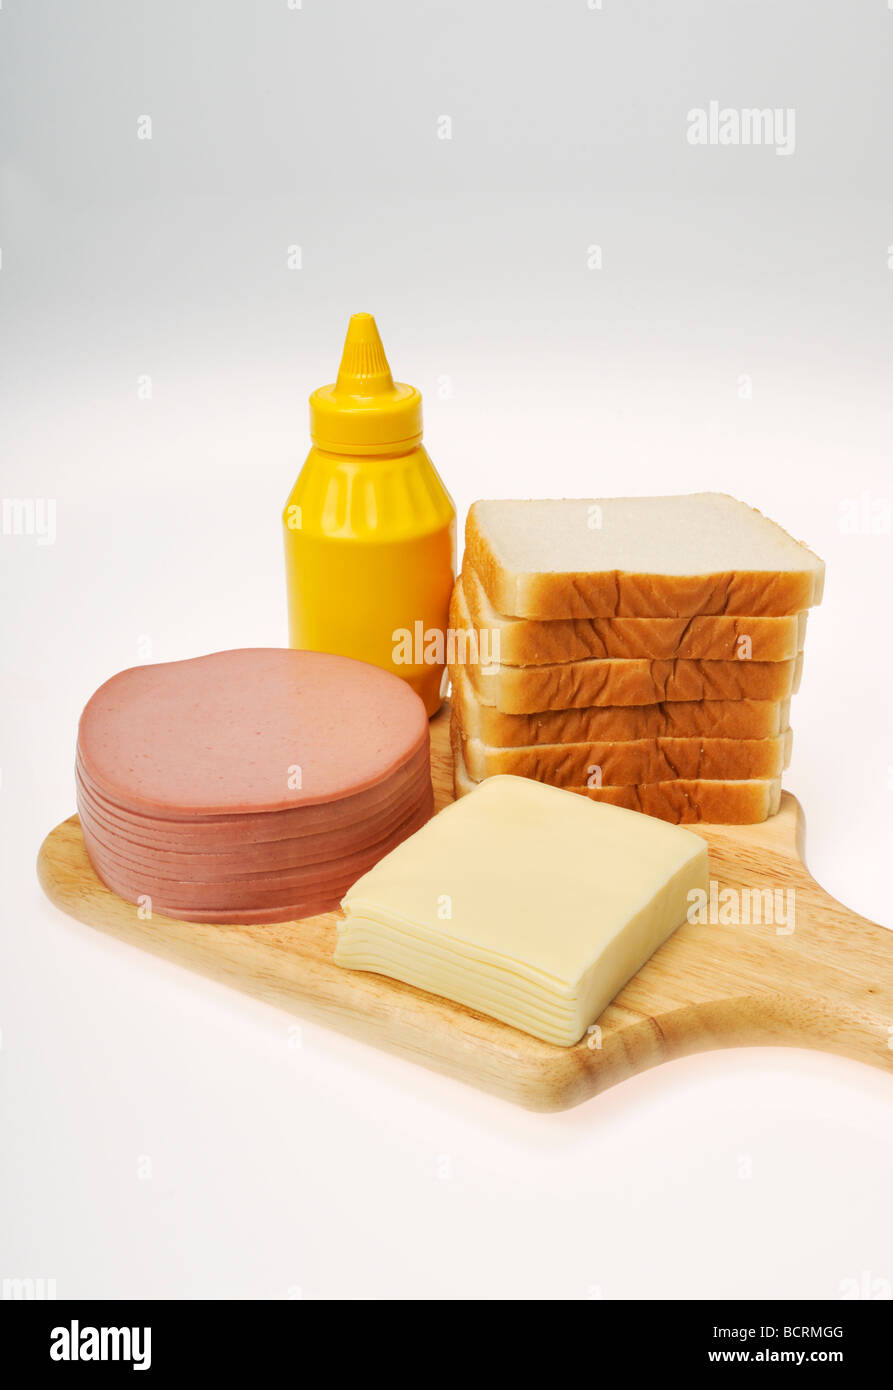 Ingrédients pour un sandwich au fromage et de Bologne avec pile de la charcuterie, du fromage, du pain et de la moutarde sur bois board Banque D'Images